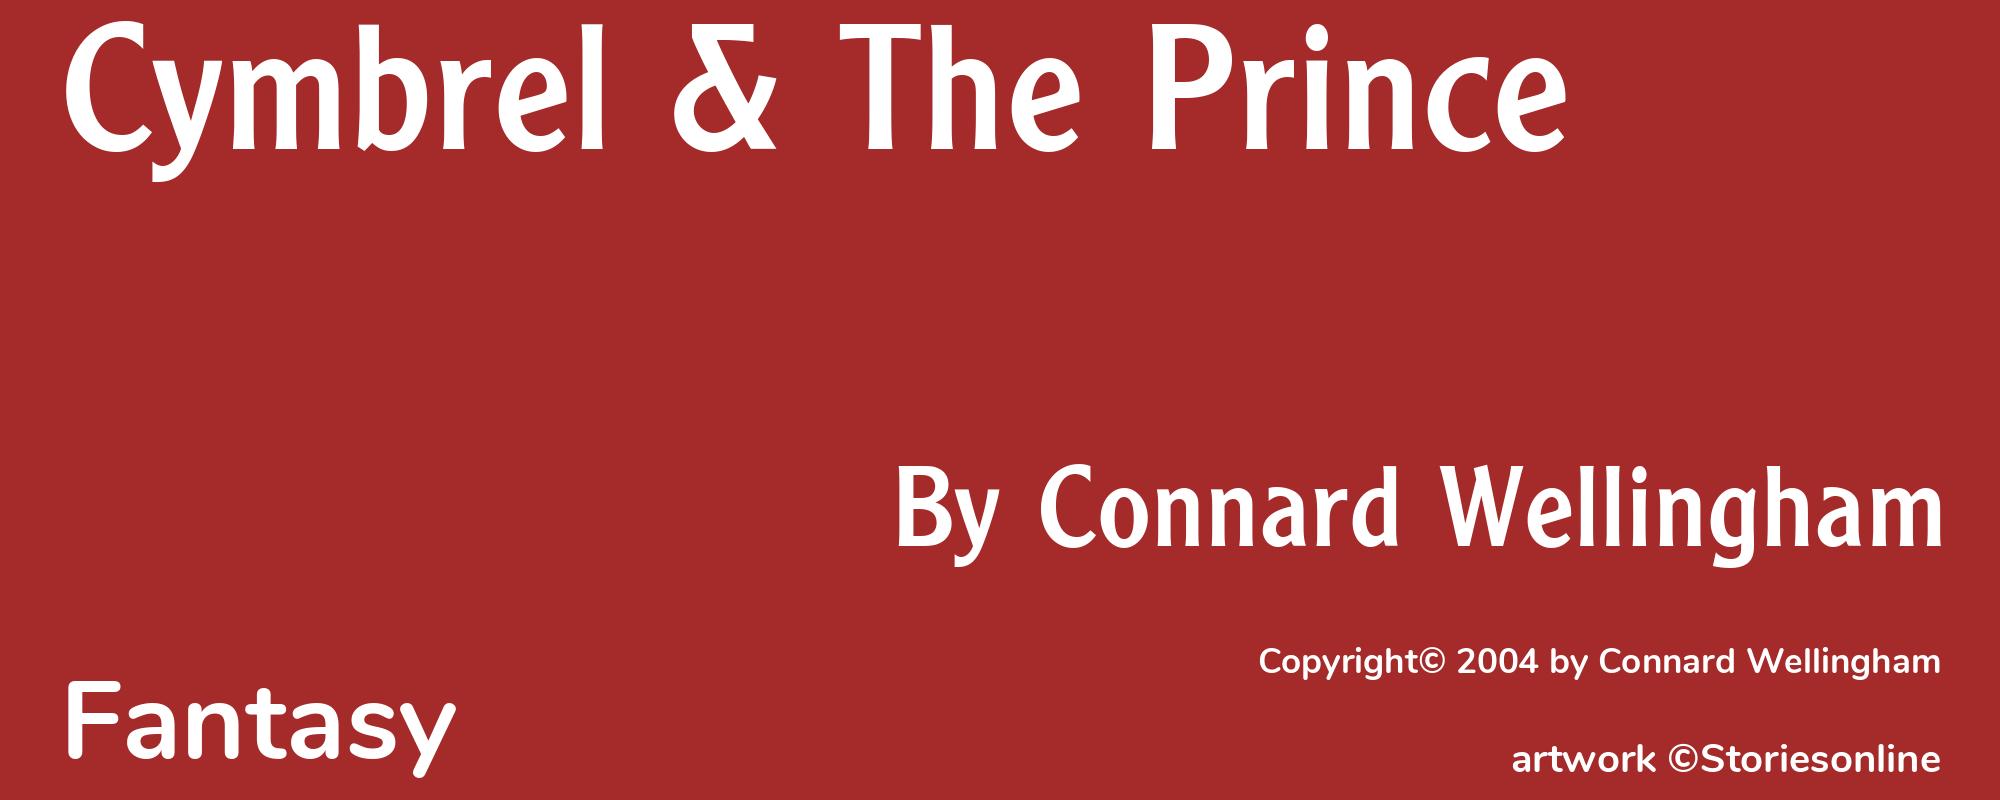 Cymbrel & The Prince - Cover